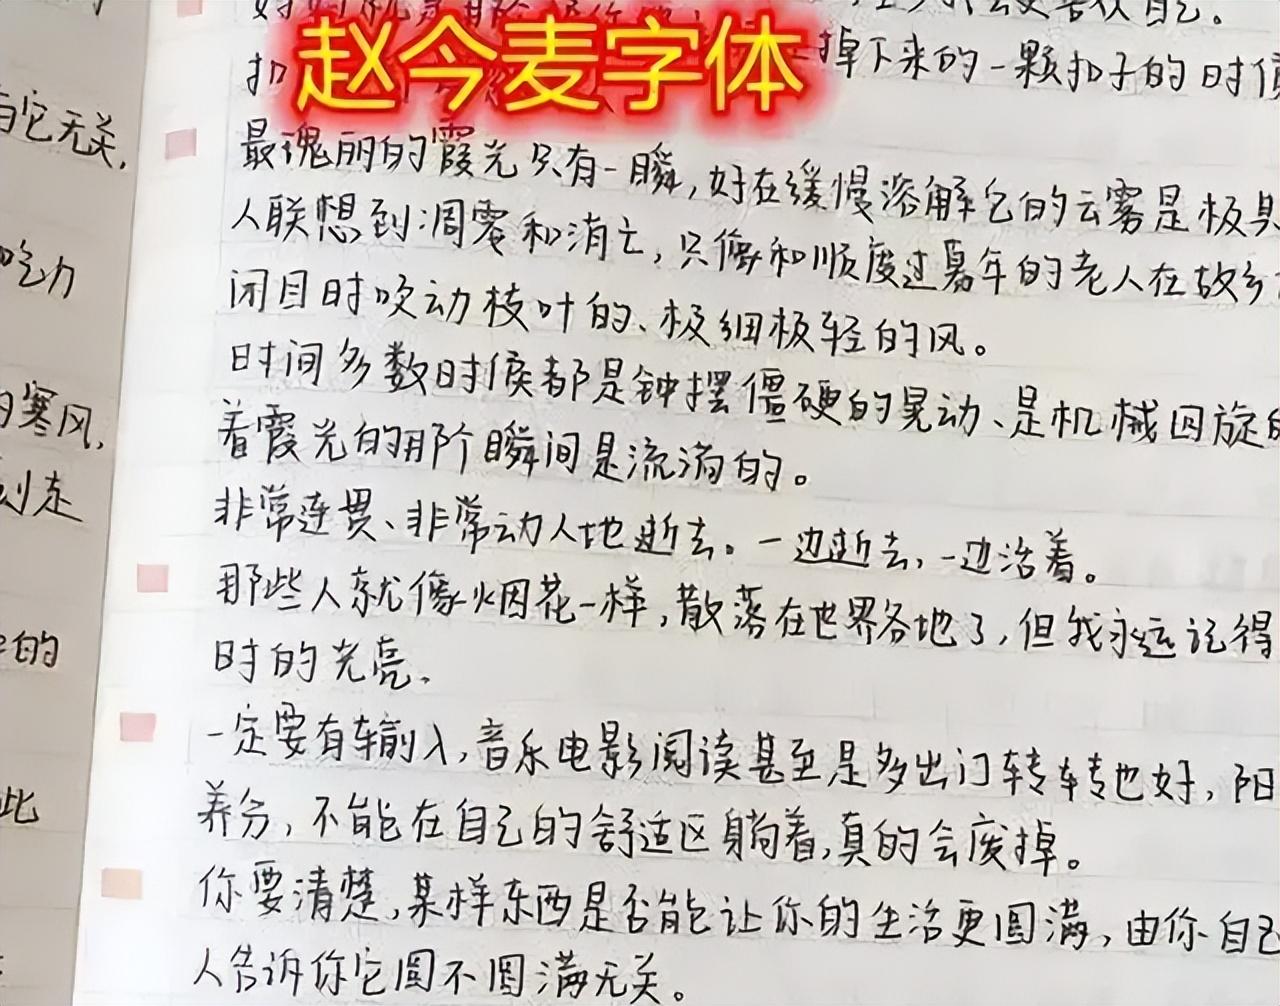 “赵今麦”字体引学生效仿（字体工整又好看批改老师也给予好评）